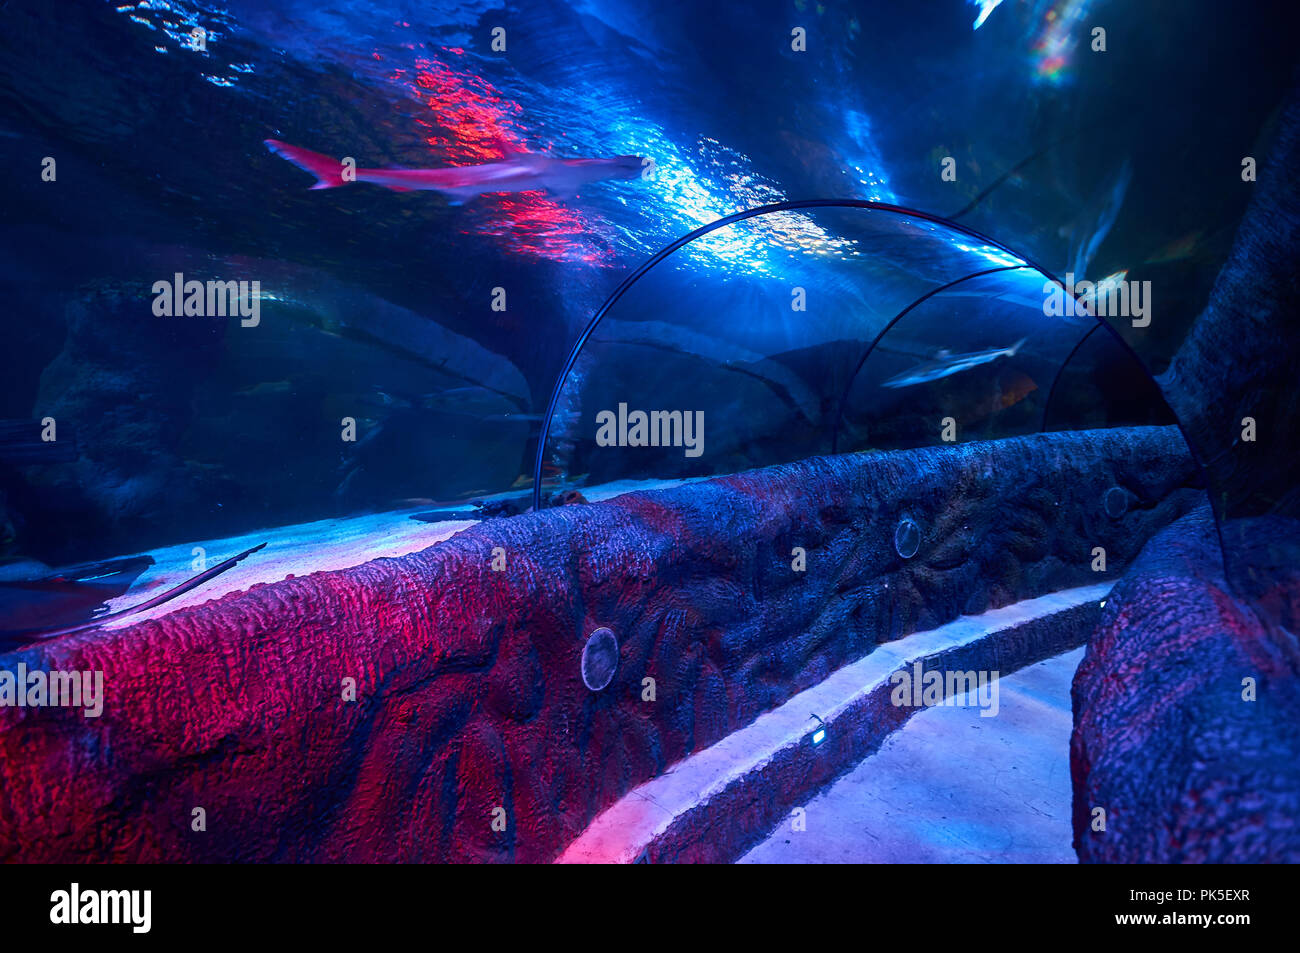 Tunnel sous-marin de l'océan - une attraction touristique dans la région de Loch Lomond aquarium Sea Life permet aux visiteurs d'admirer les créatures de la mer de près. Banque D'Images